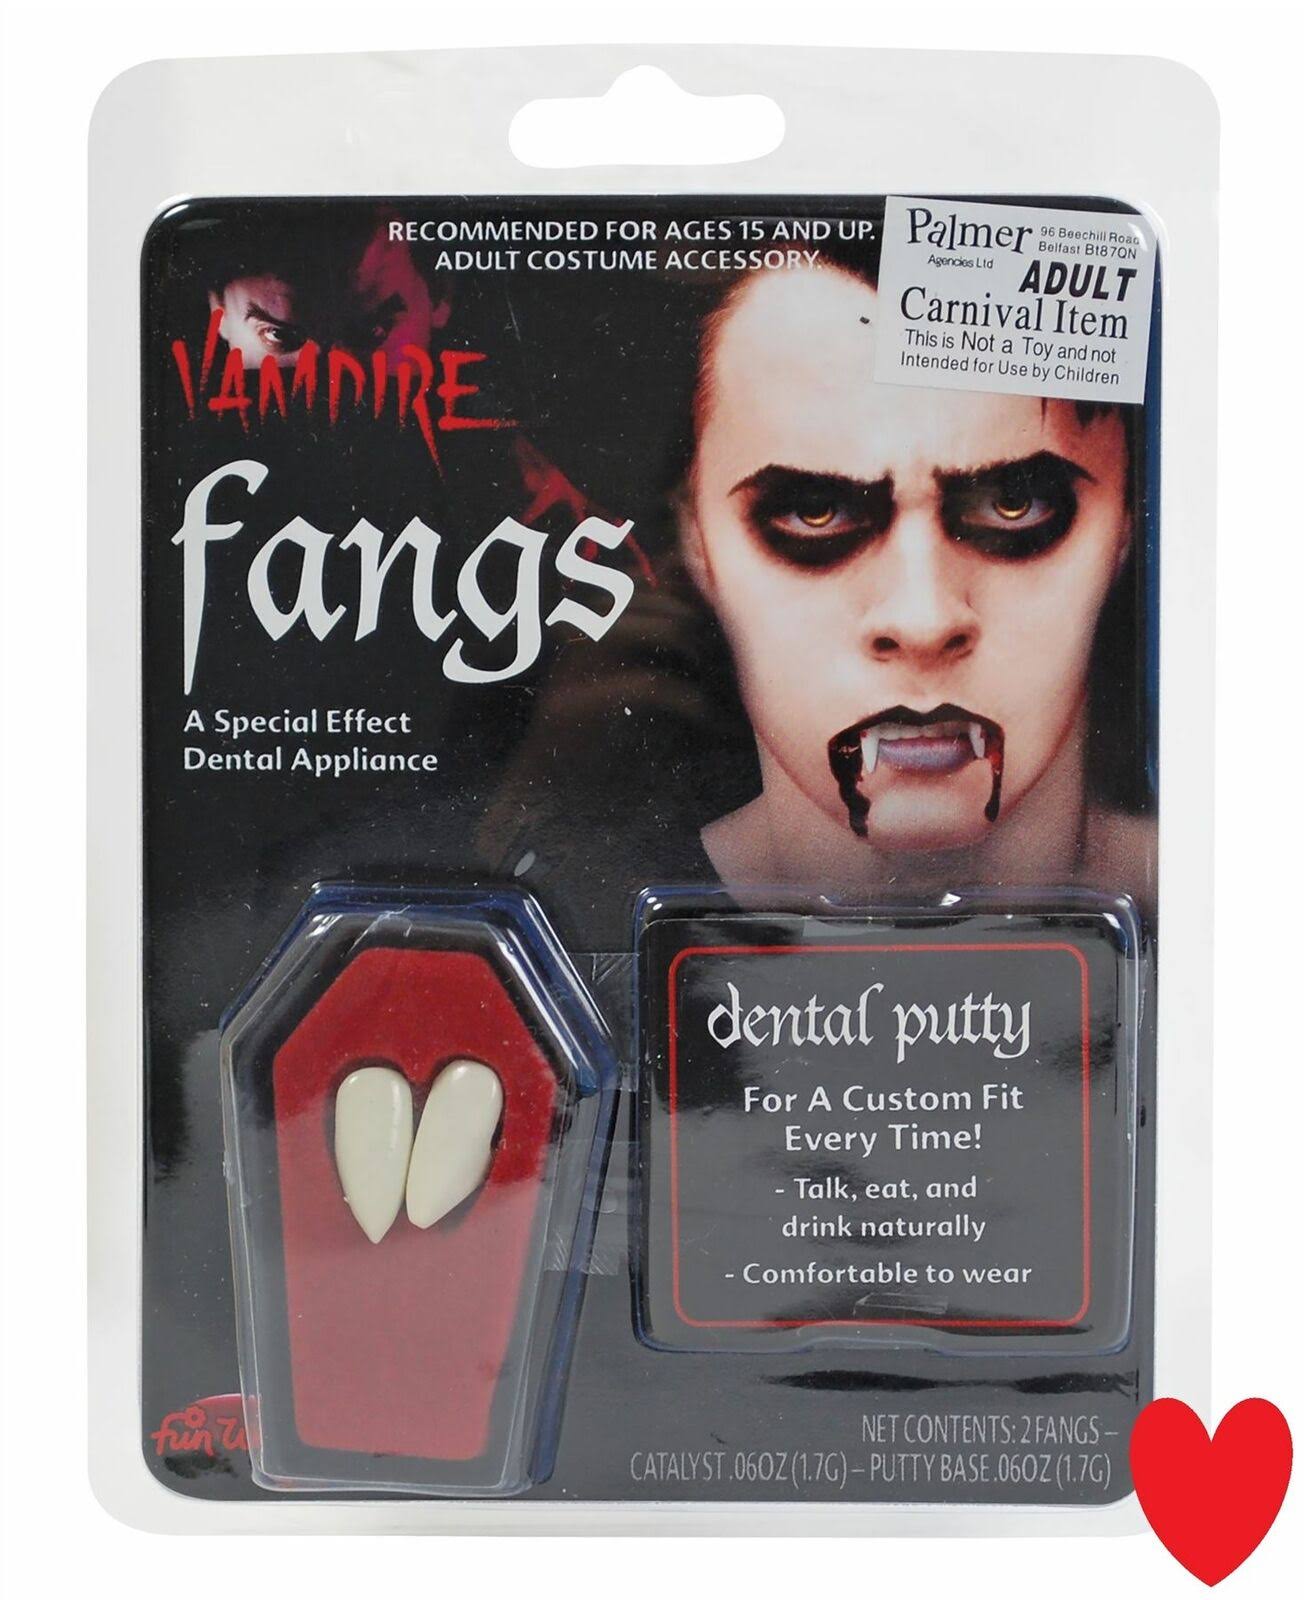 Vampire Fangs.